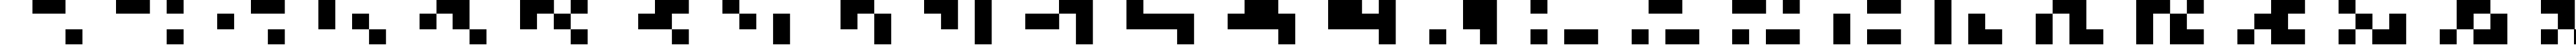 Пример написания английского алфавита шрифтом Arial Alternative Symbol